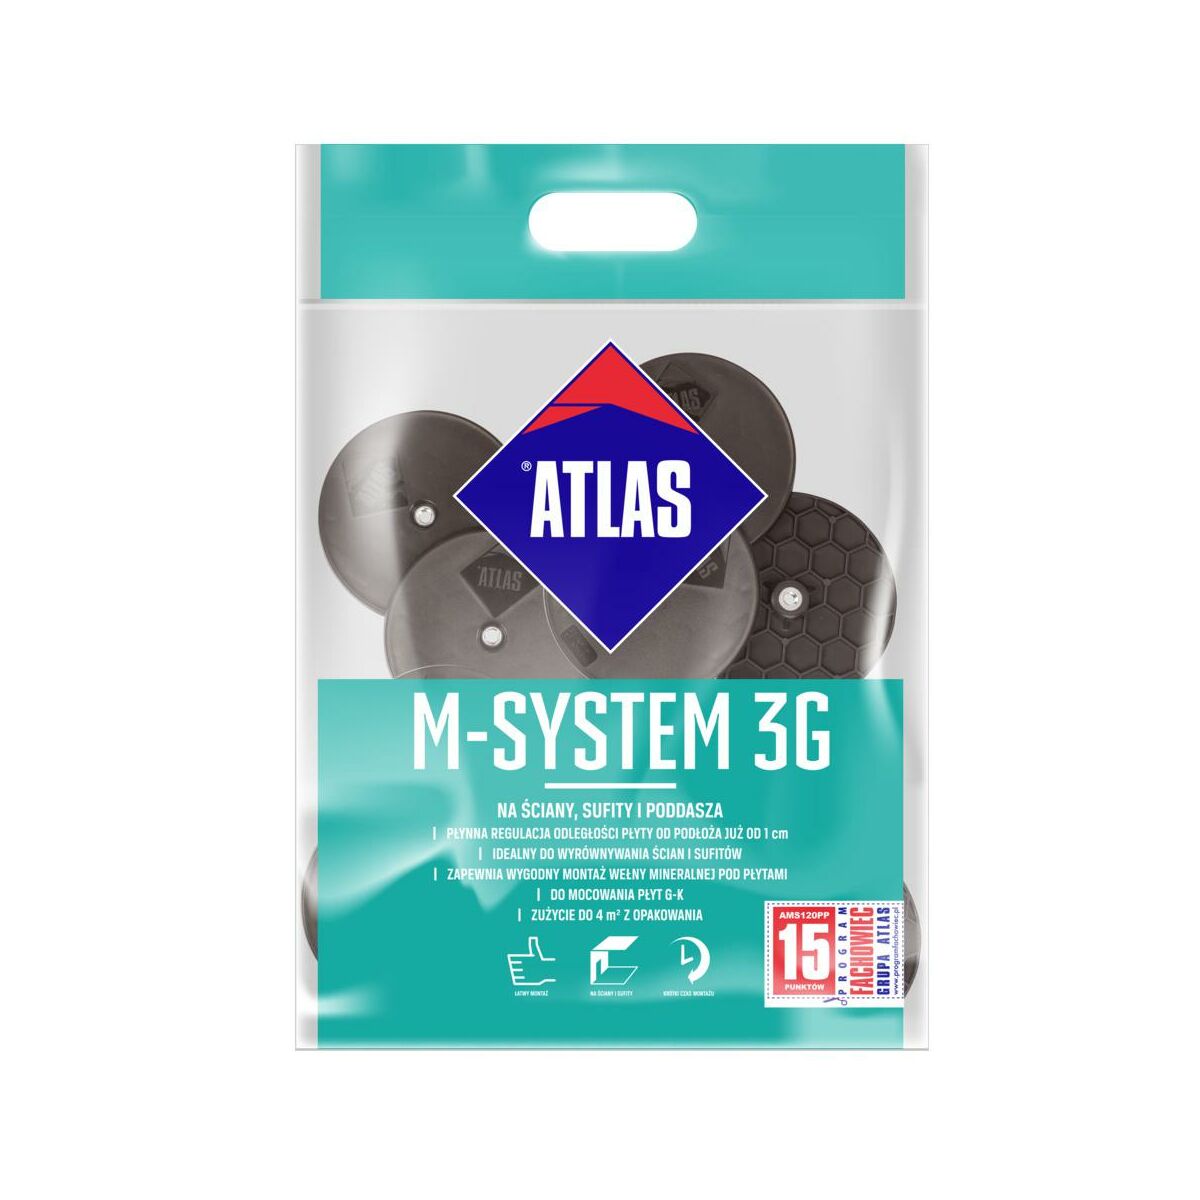 Zestaw łączników do montażu płyt g-k M-SYSTEM 3G L200 Atlas